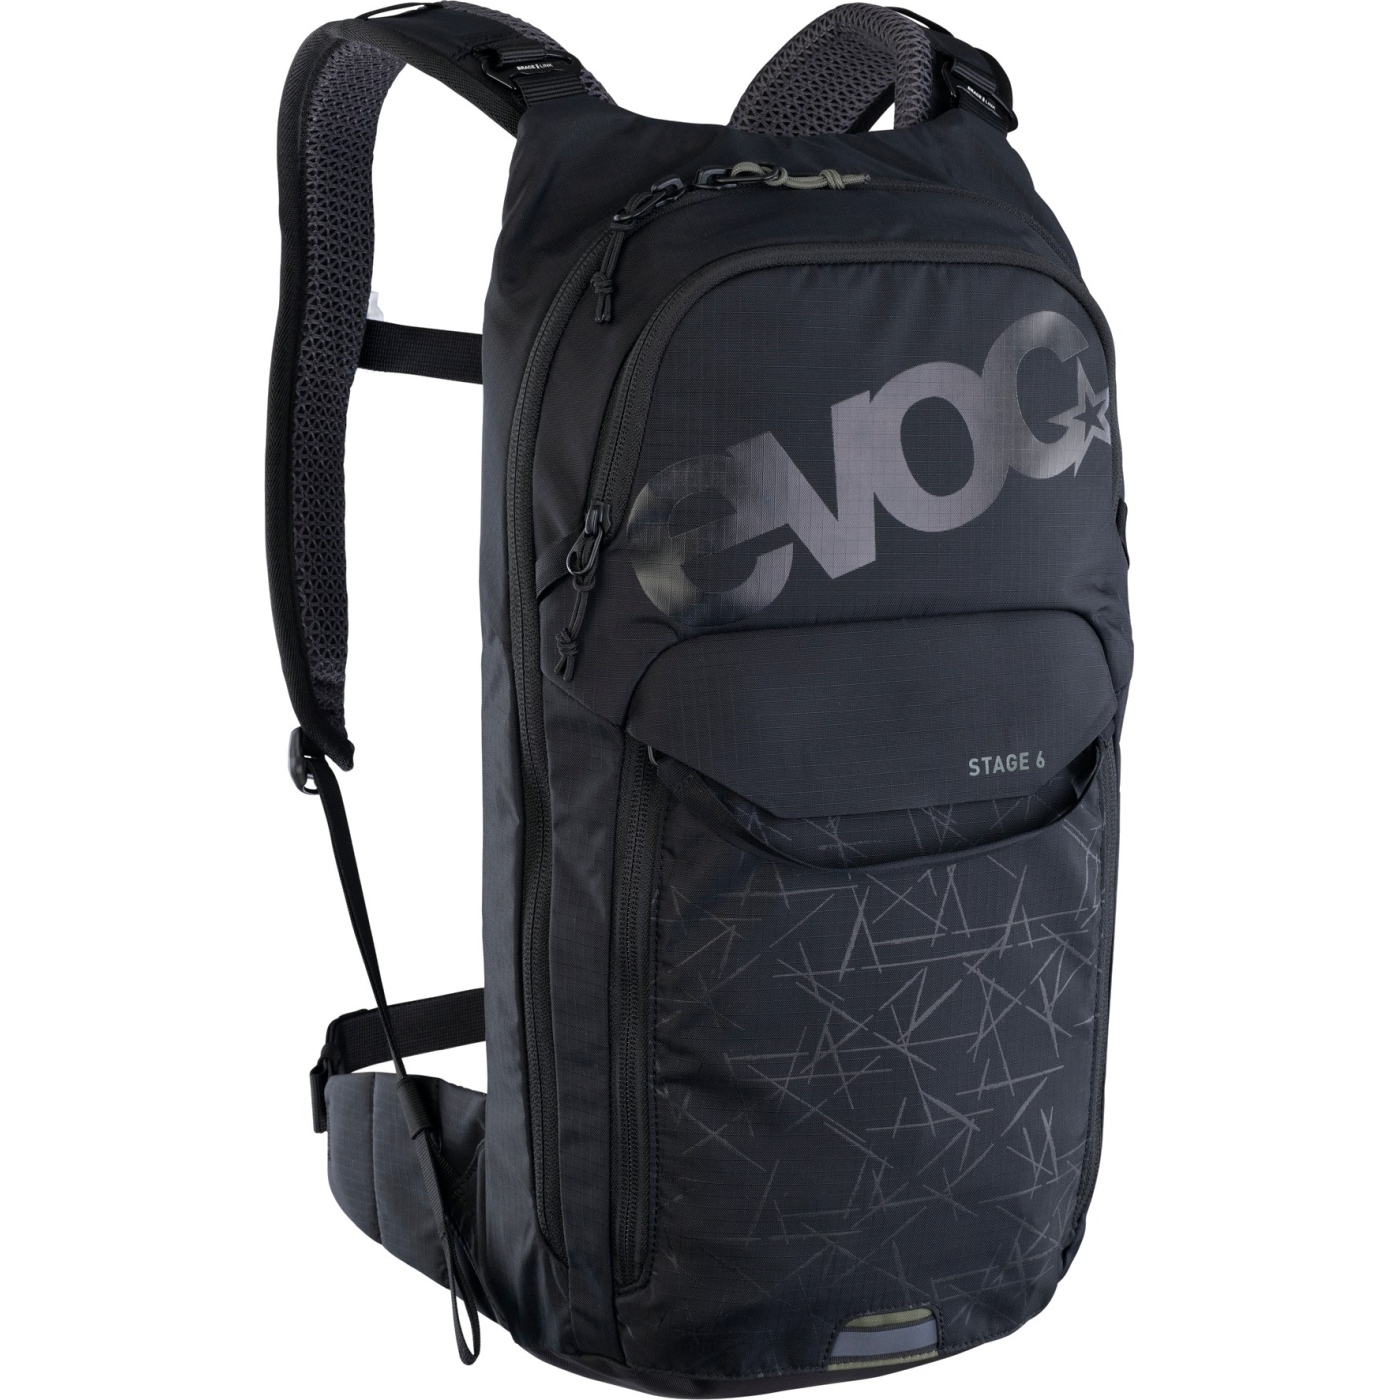 Picture of EVOC Stage Backpack 6 L + Hydration Bladder 2 L - Black